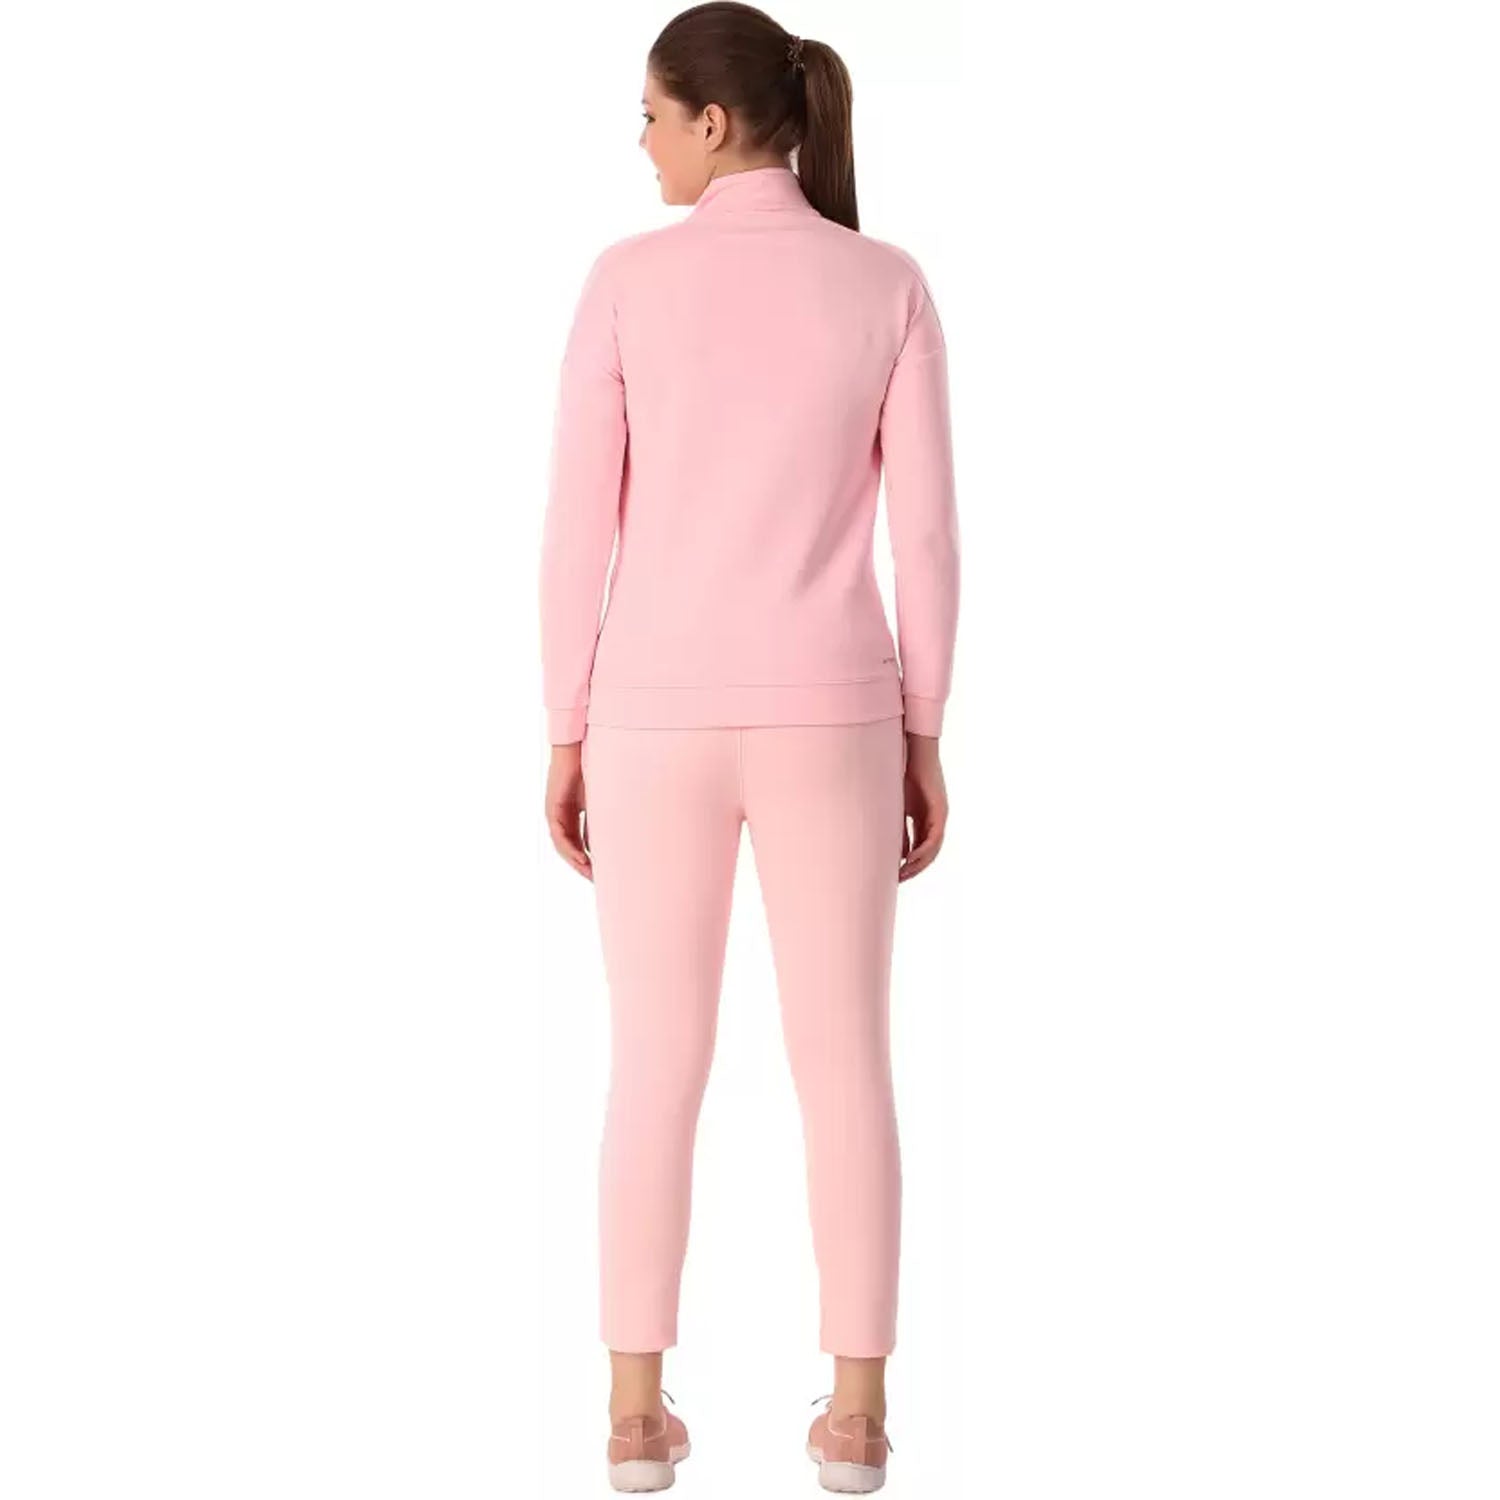 Vector X Laurel Women's Track Suit, Pink - Best Price online Prokicksports.com